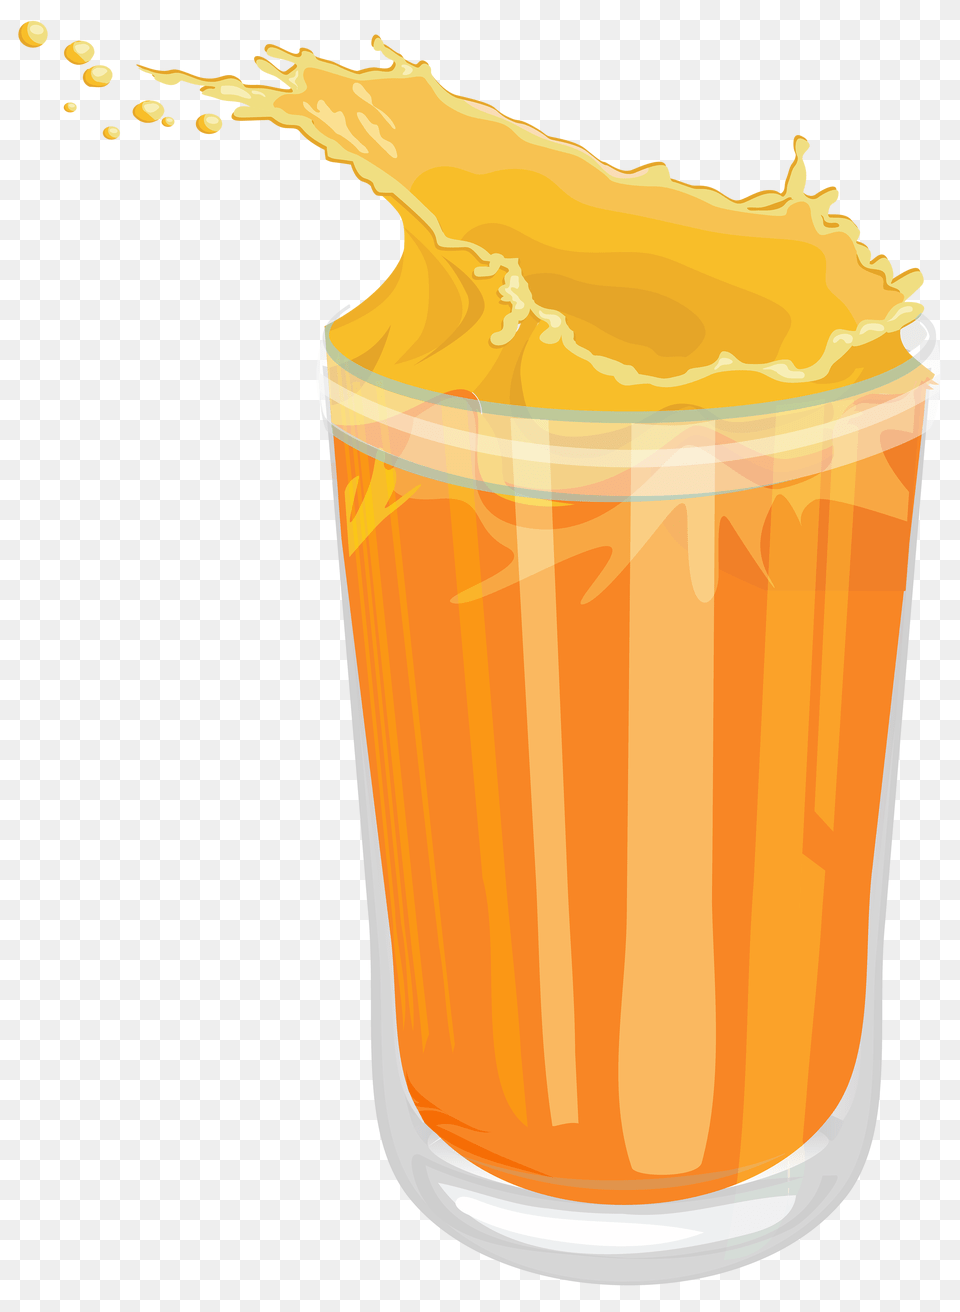 Orange Juice Dessert Drinks, Beverage, Orange Juice, Smoke Pipe Free Png